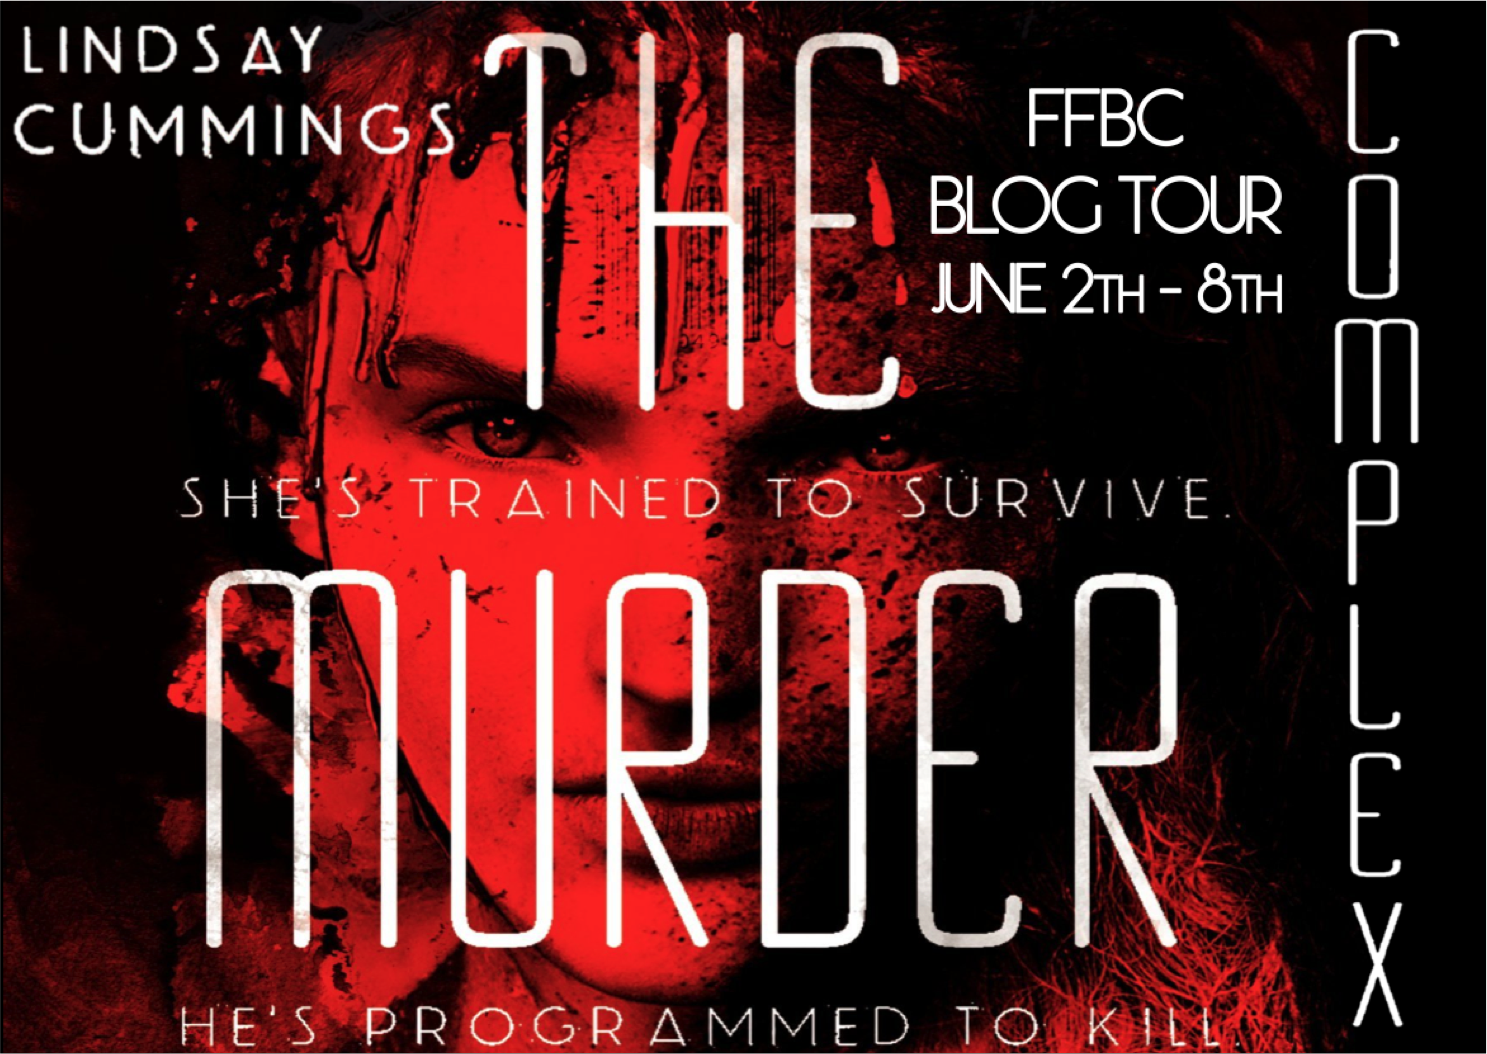 http://theunofficialaddictionbookfanclub.blogspot.com/2014/06/ffbc-blog-tour-murder-complex-fear.html